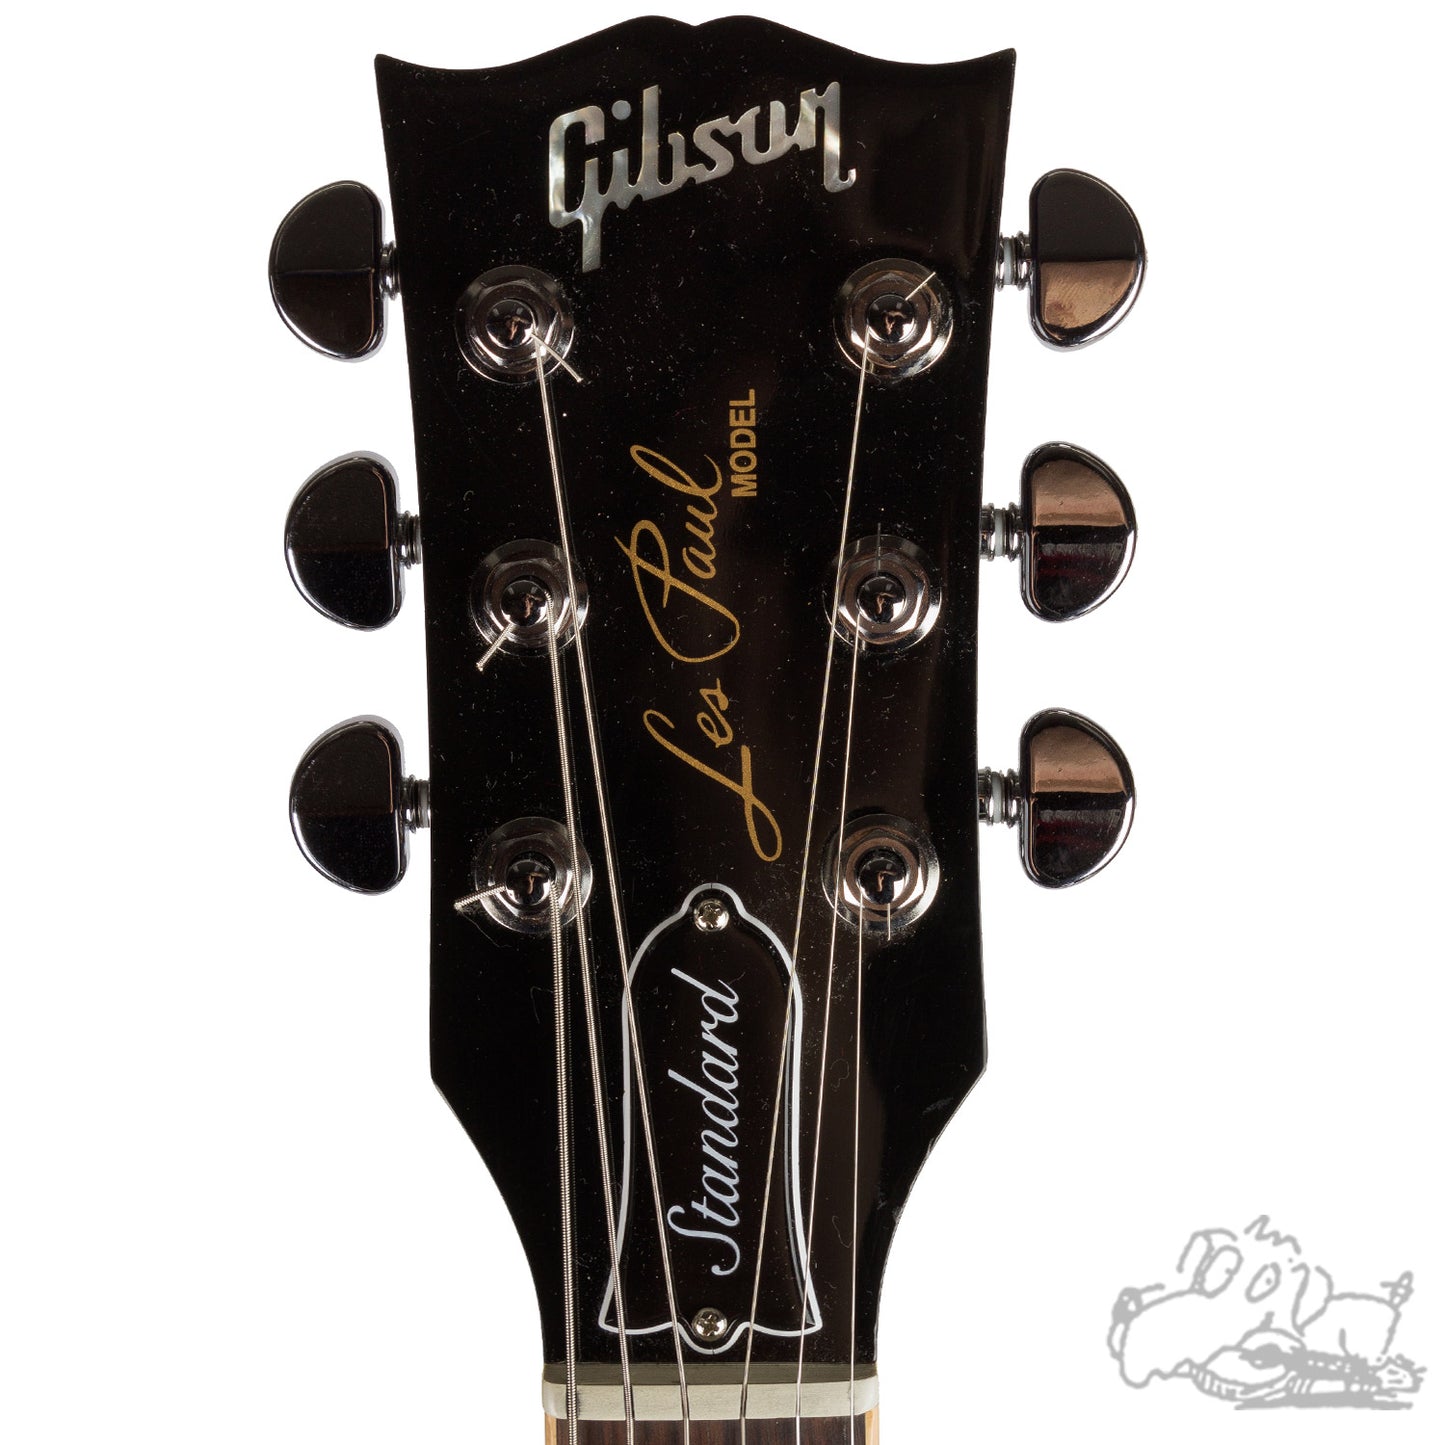 2016 Gibson Les Paul Double Cut In Ocean Blue